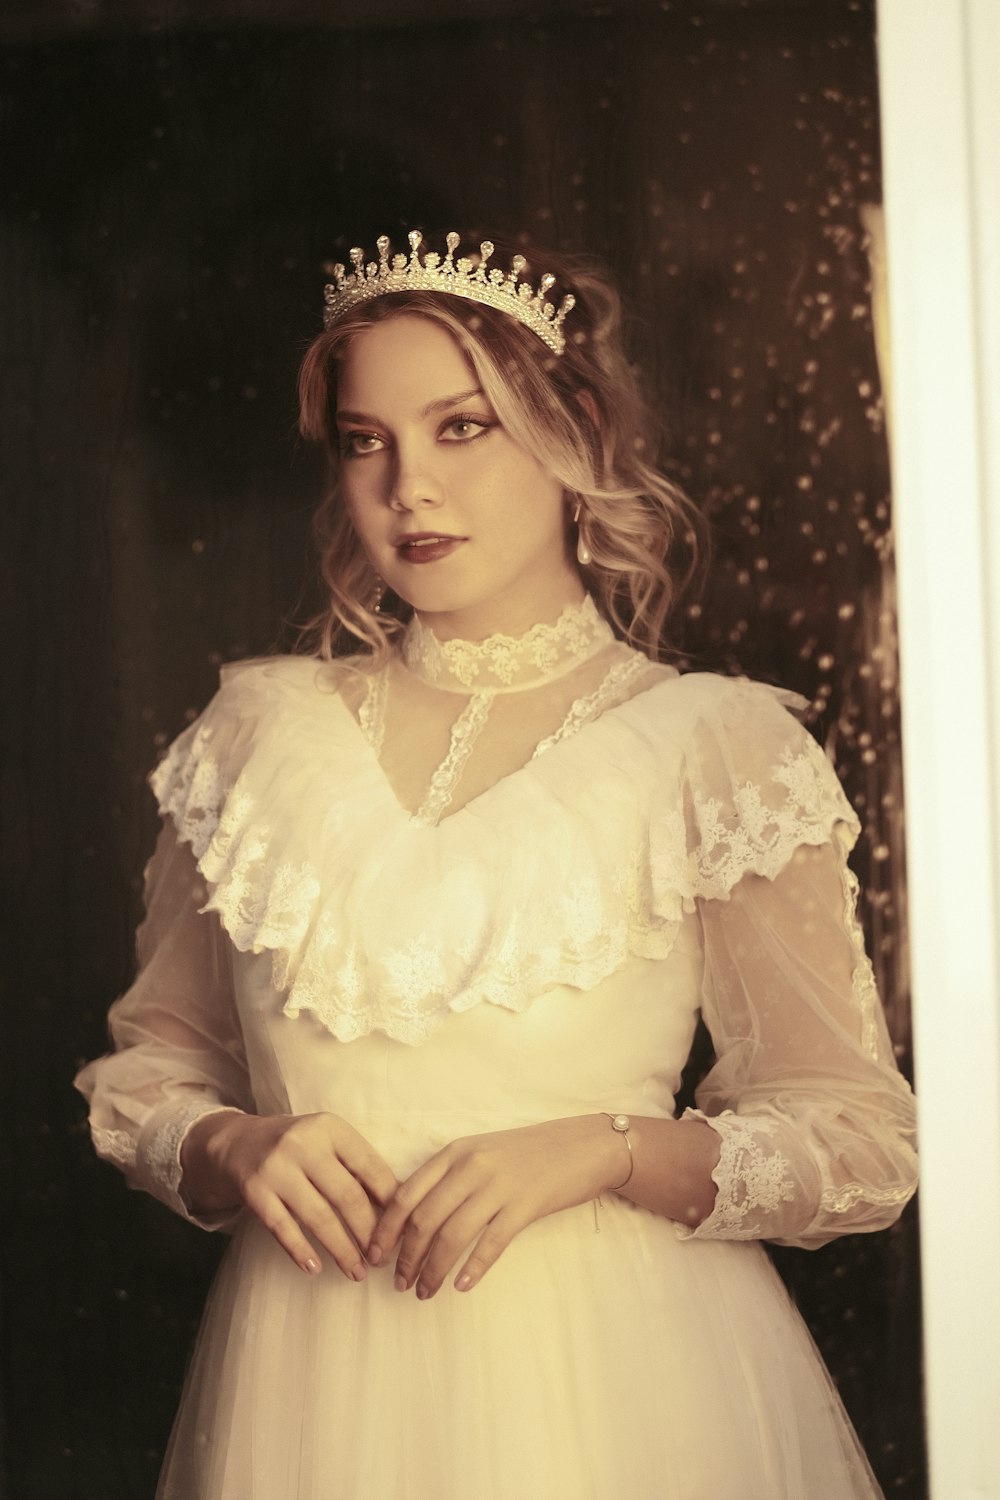 a woman in a white dress wearing a tiara